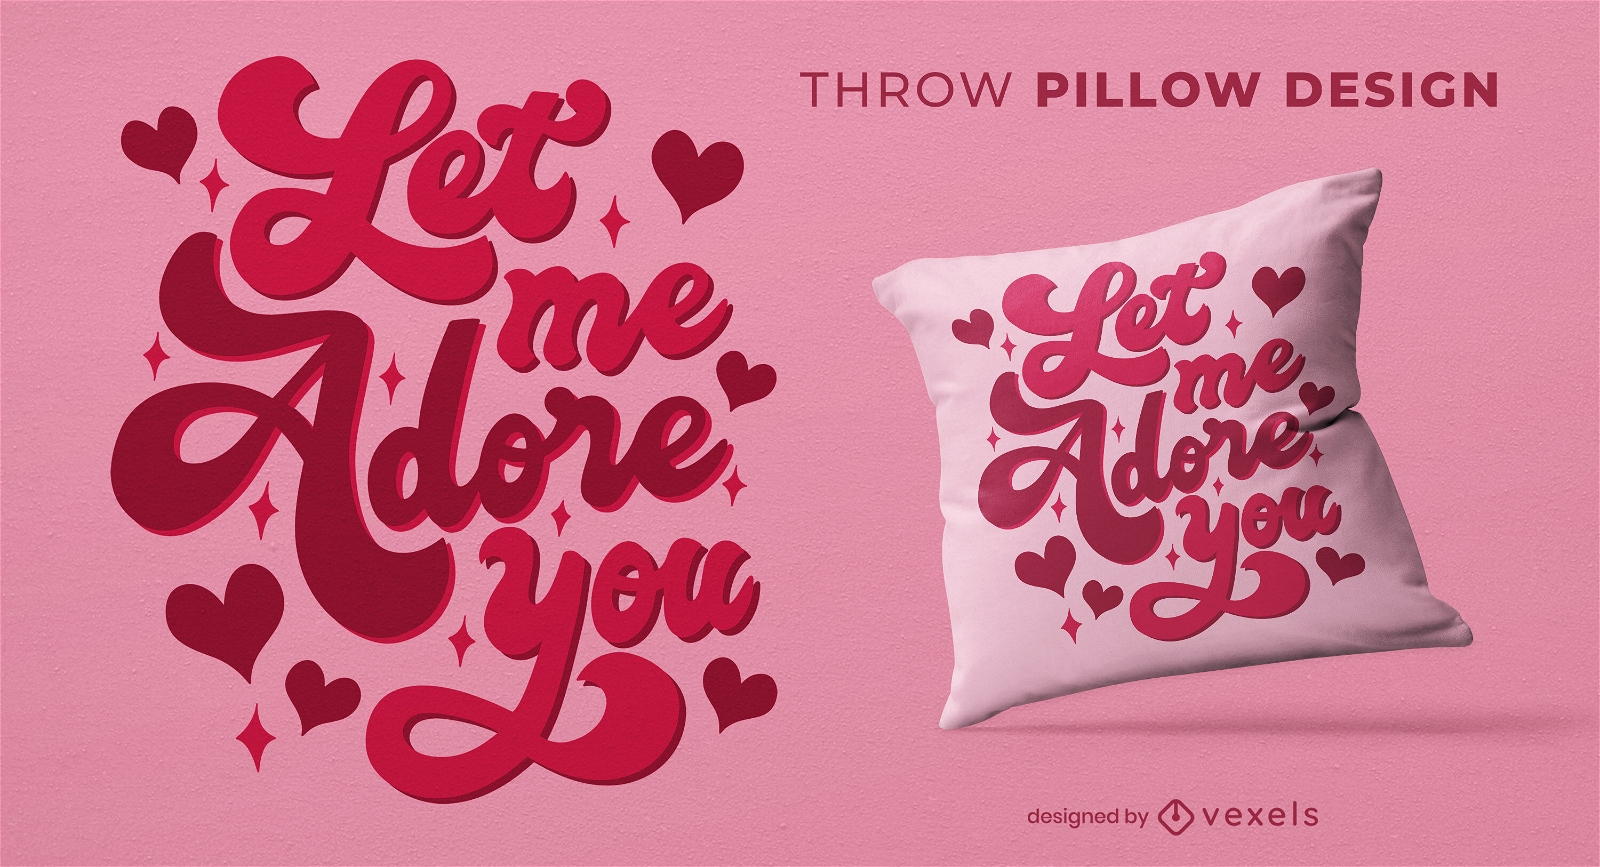 Let me adore you throw pillow design